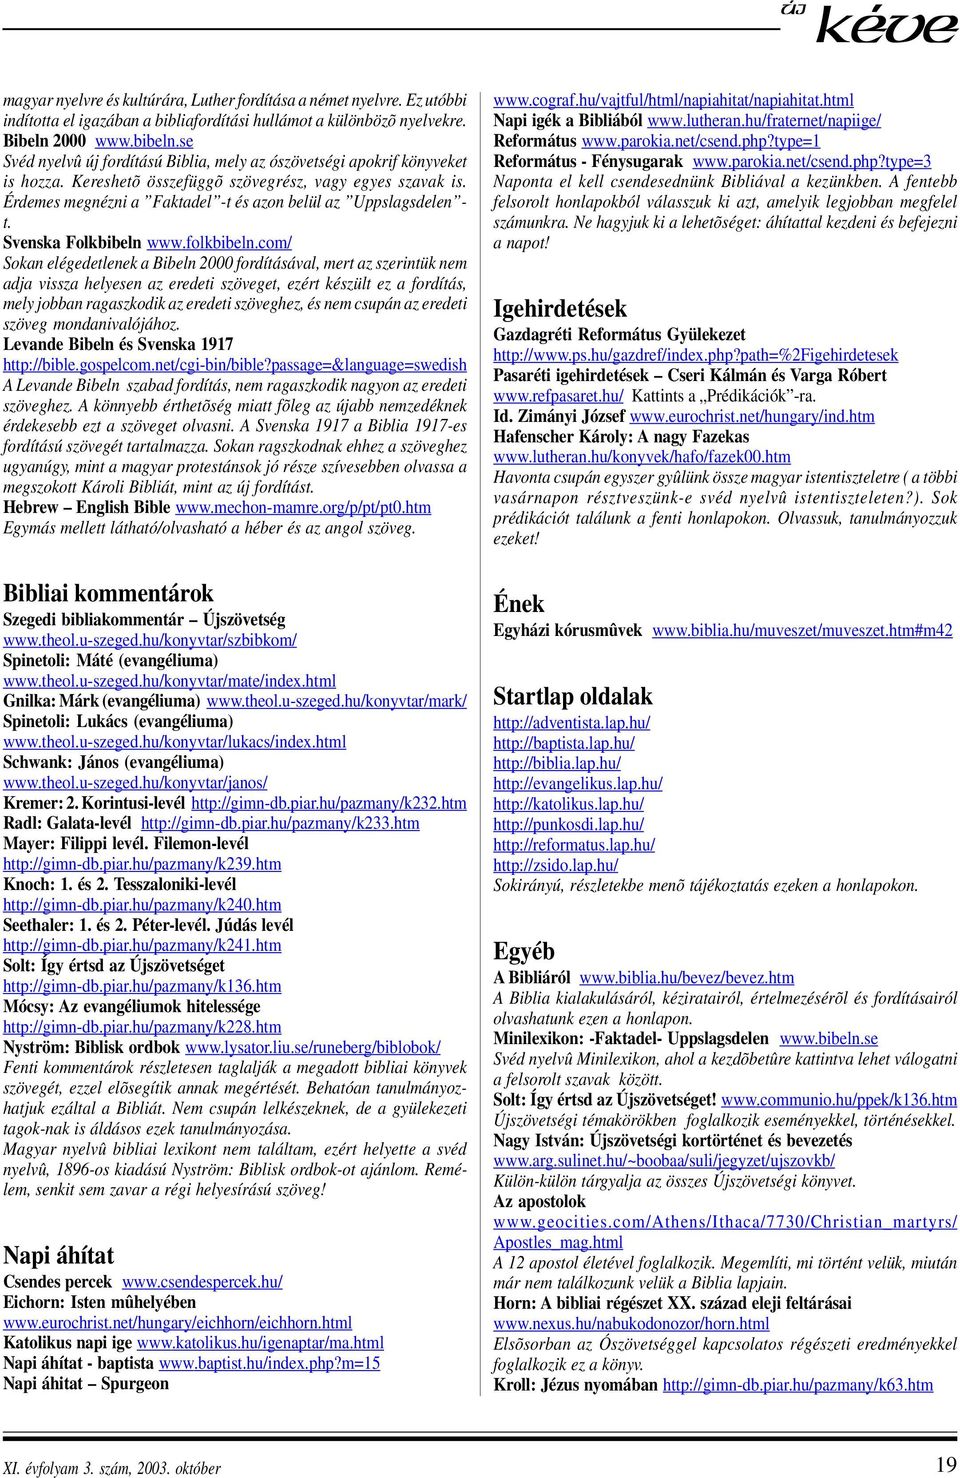 Érdemes megnézni a Faktadel -t és azon belül az Uppslagsdelen - t. Svenska Folkbibeln www.folkbibeln.